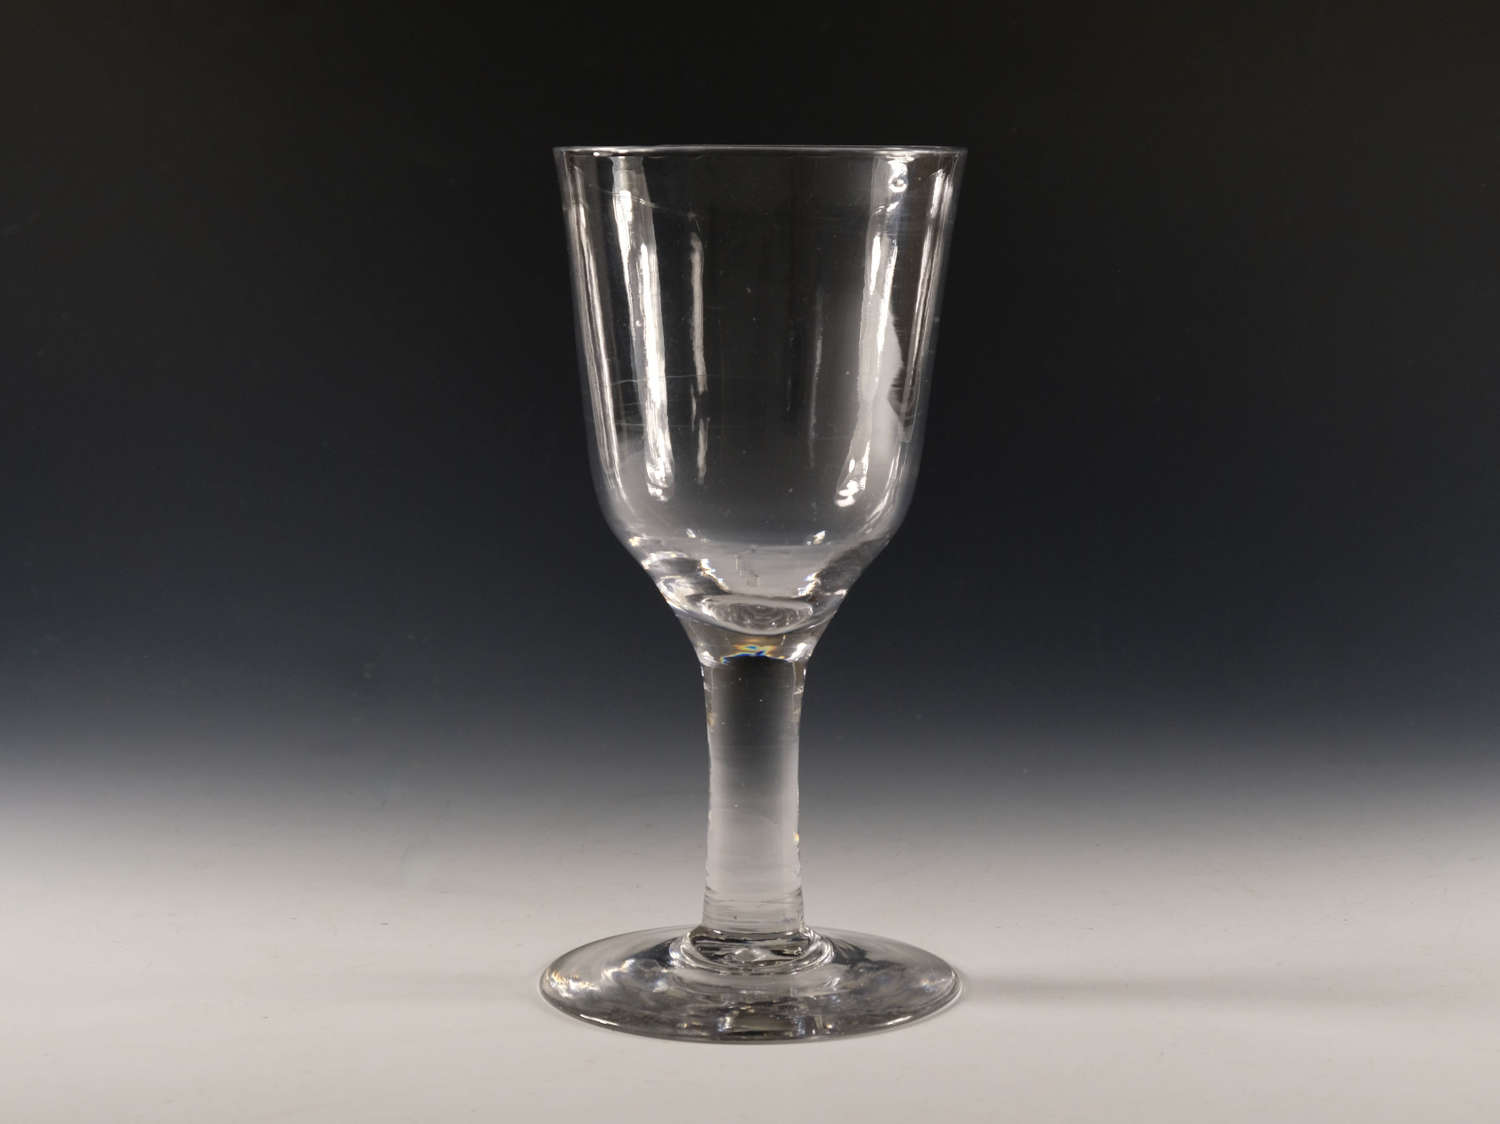 Antique glass - plain stem goblet English c1760